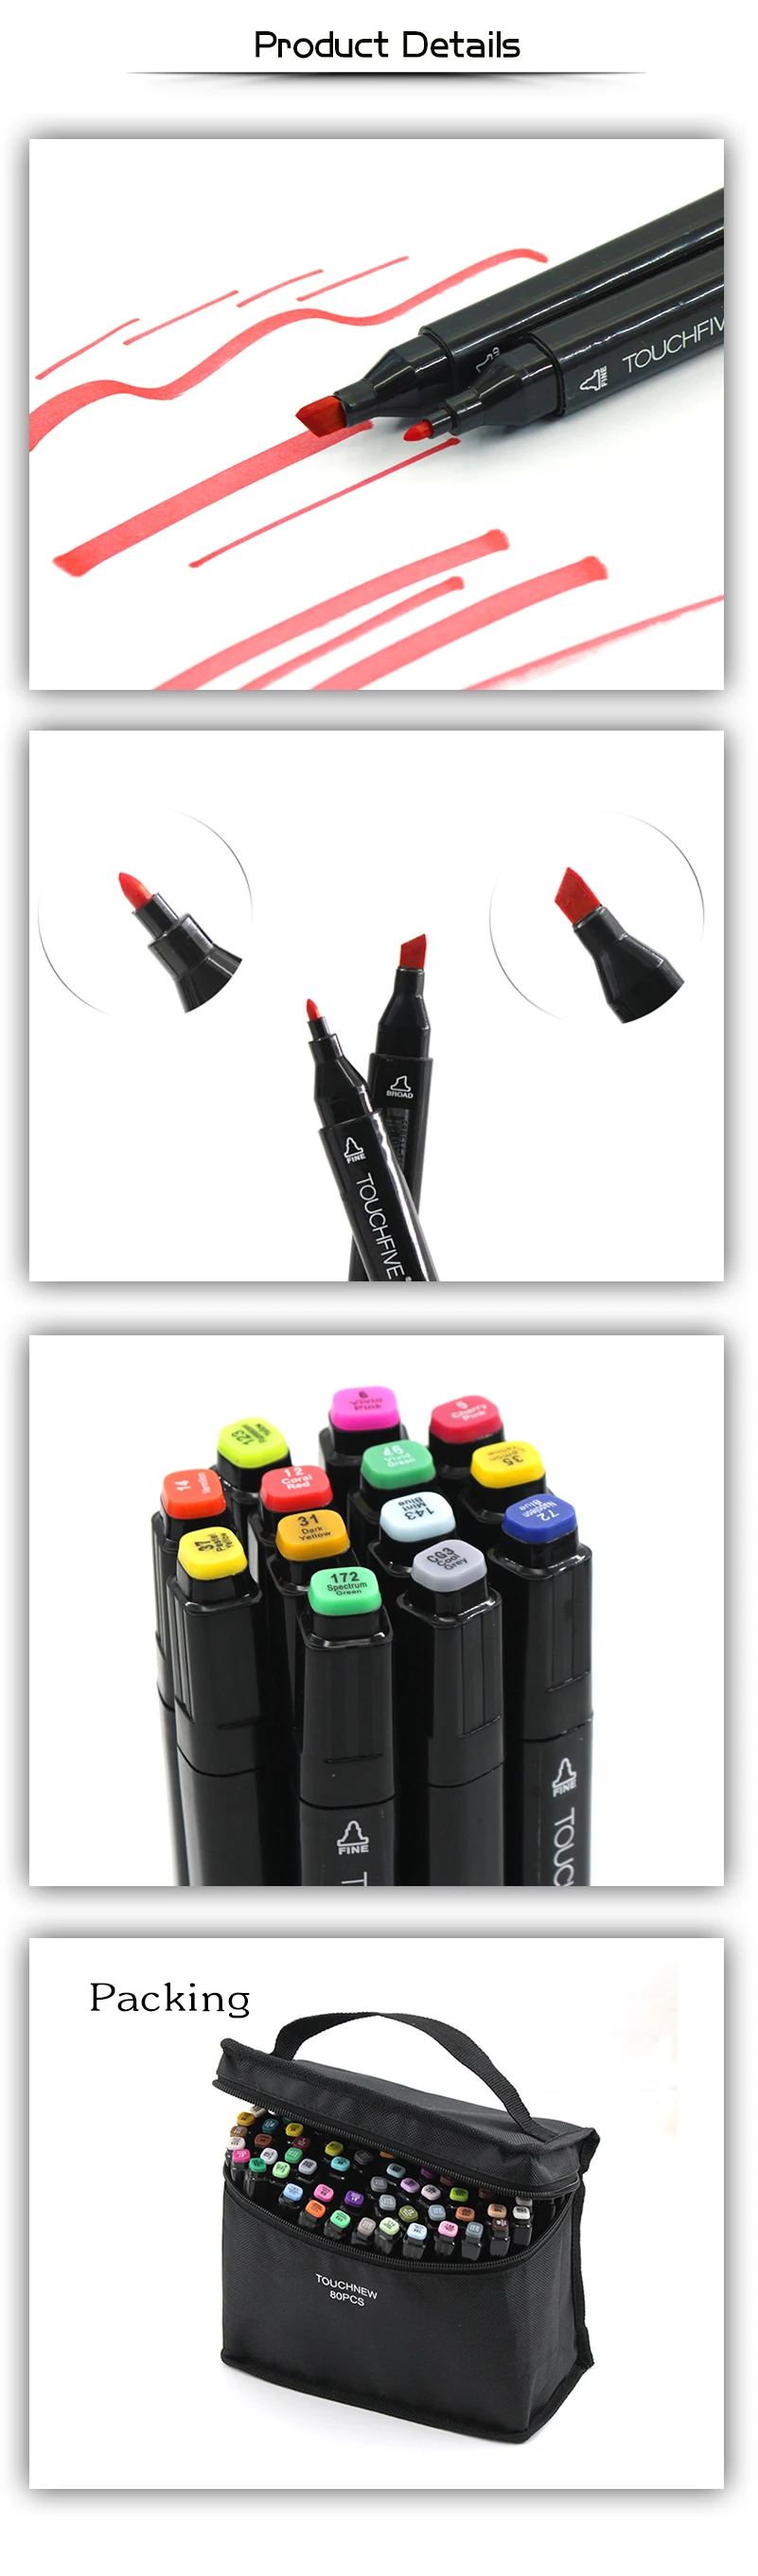 TOUCHFIVE 30 36 48 цветов Двойная Ручка Эскиз маркер ручка Алкогольная масляная основа маркеры для Манга Аниме Комикс дизайн ручка для рисования